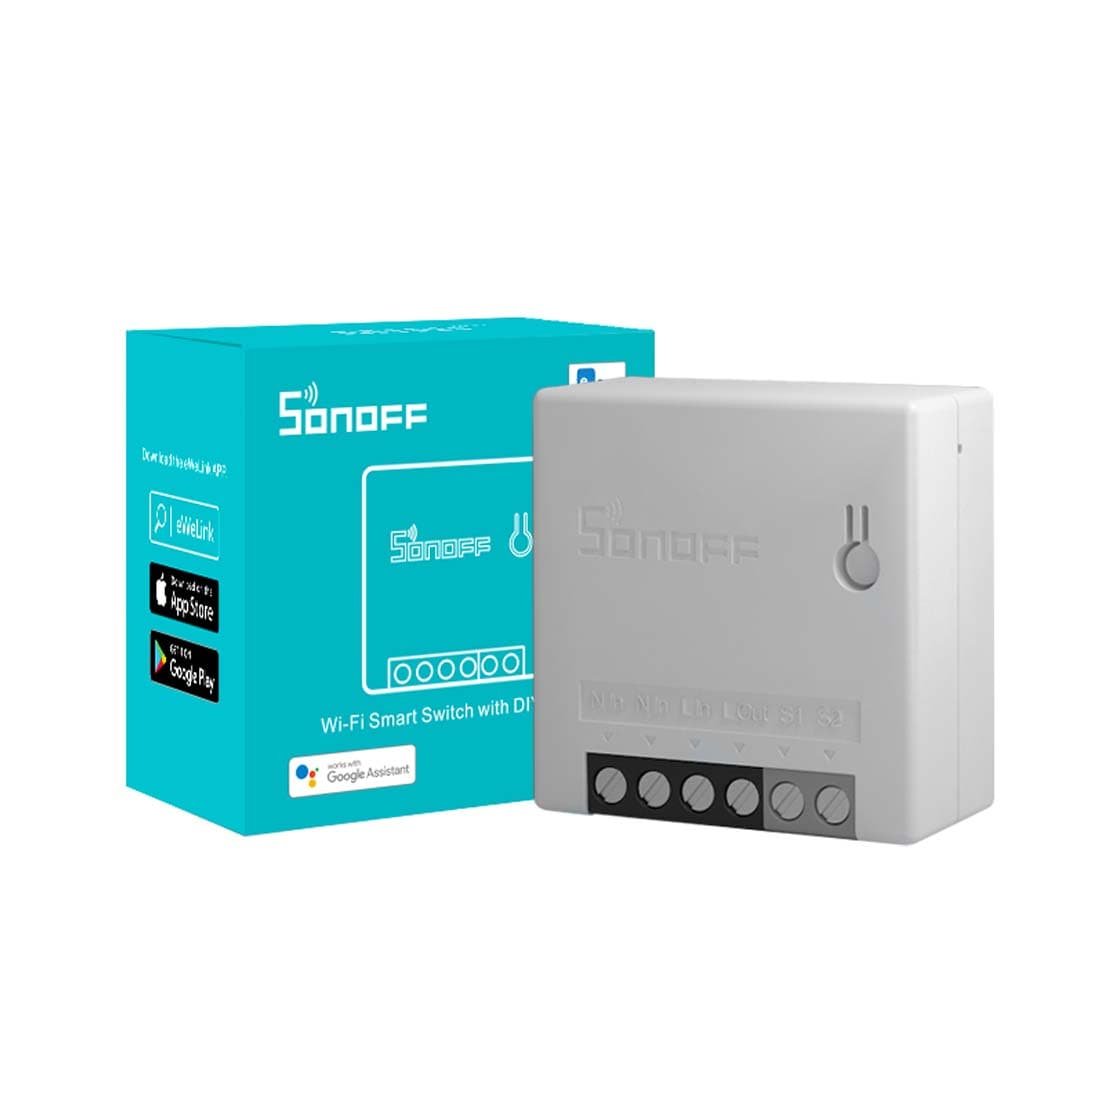 Se Sonoff Smart Switch - WiFi Smart Switch - Sonoff MINI R2 - DIY Mode - 2 - Vejs hos PlusLED.dk